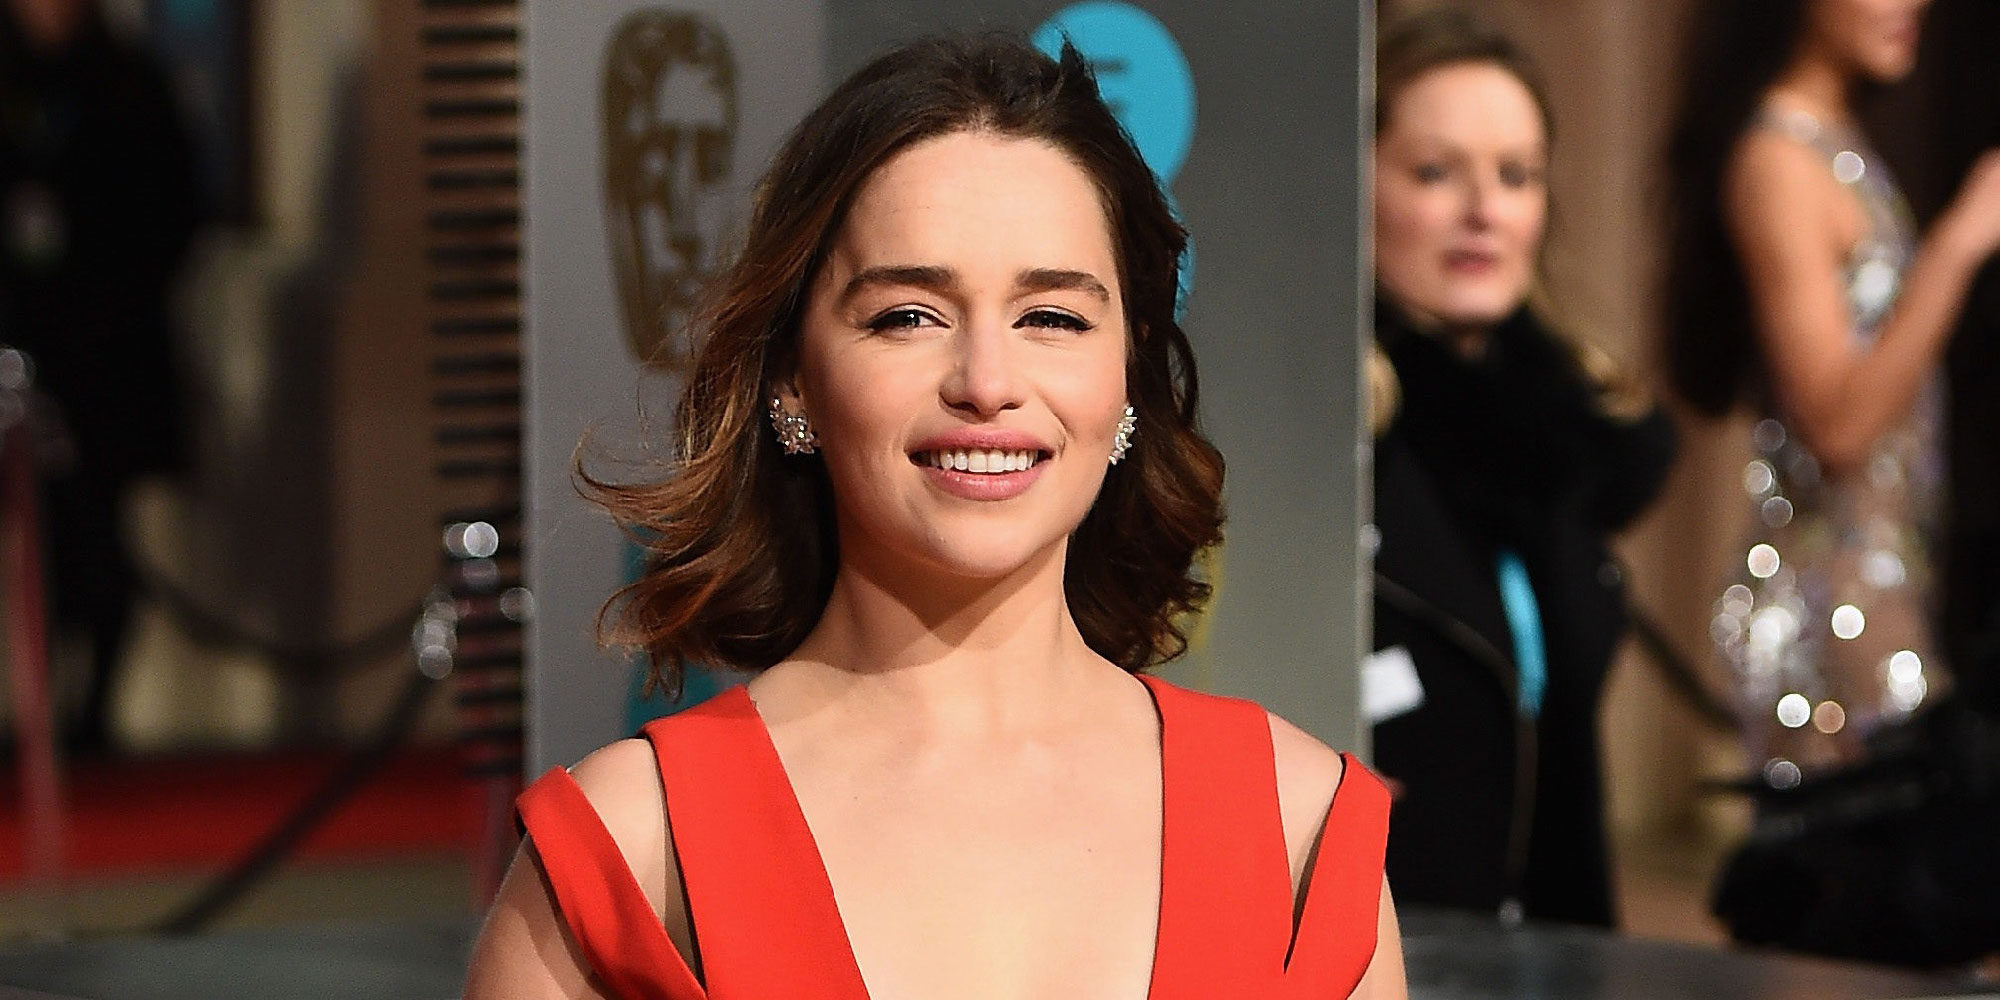 Emilia Clarke, nuevo fichaje del spin-off de 'Star Wars' sobre Han Solo